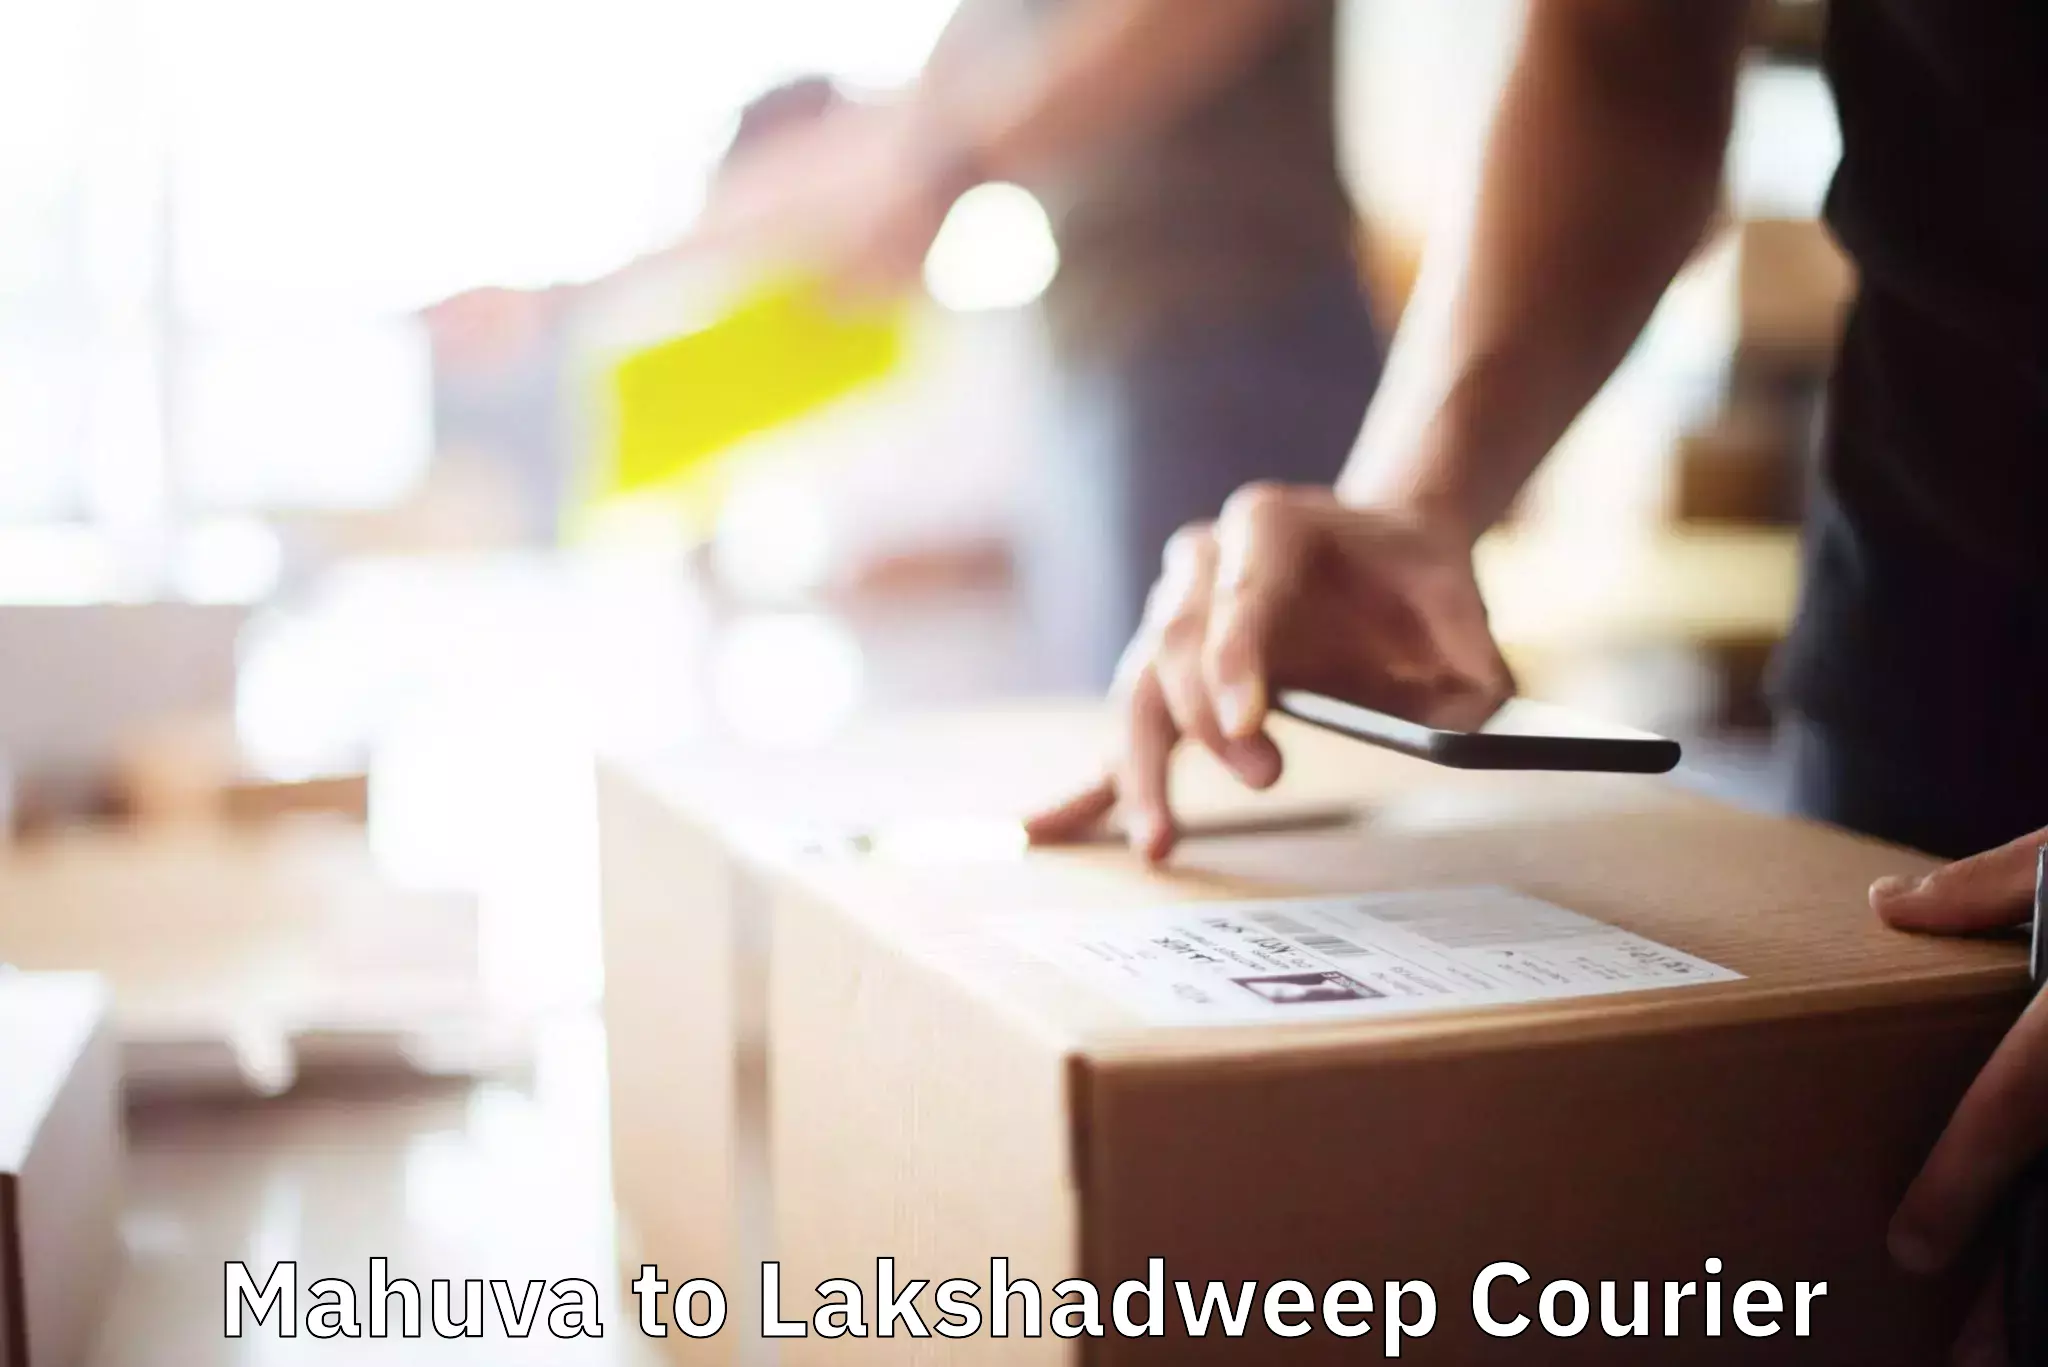 Moving and handling services Mahuva to Lakshadweep